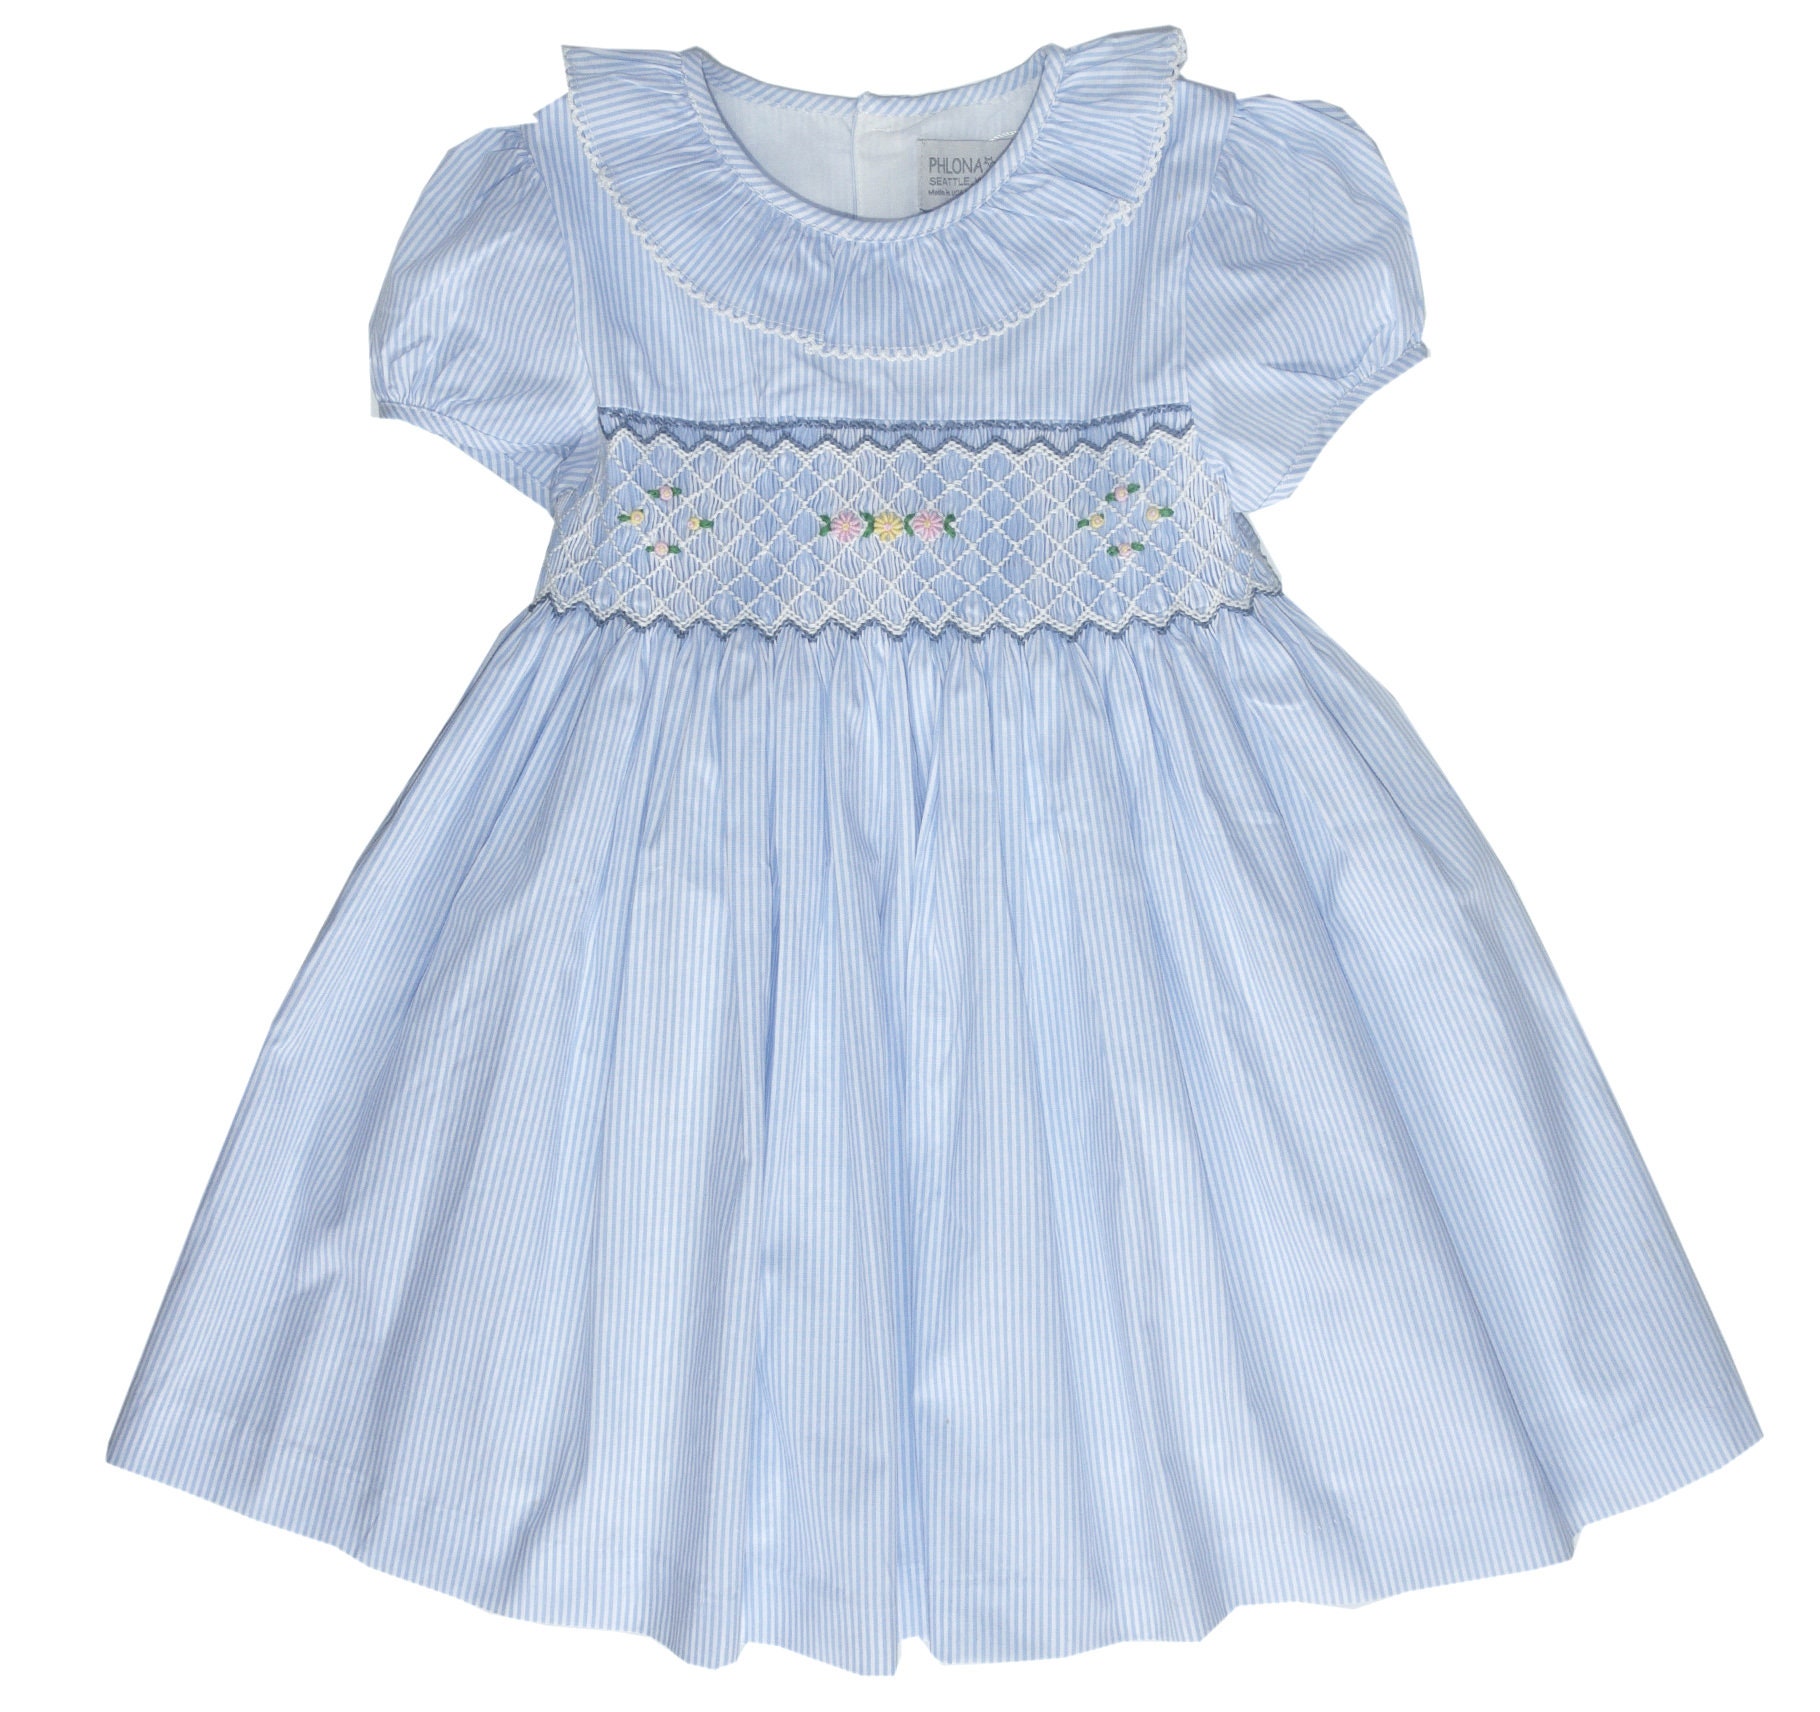 Blaues Hand Gesmoktes Mädchen Liberty Kleid | Portrait Strand Brautkleid Twirl Frühlingskleid Rüschen Sommerkleid von Phlona